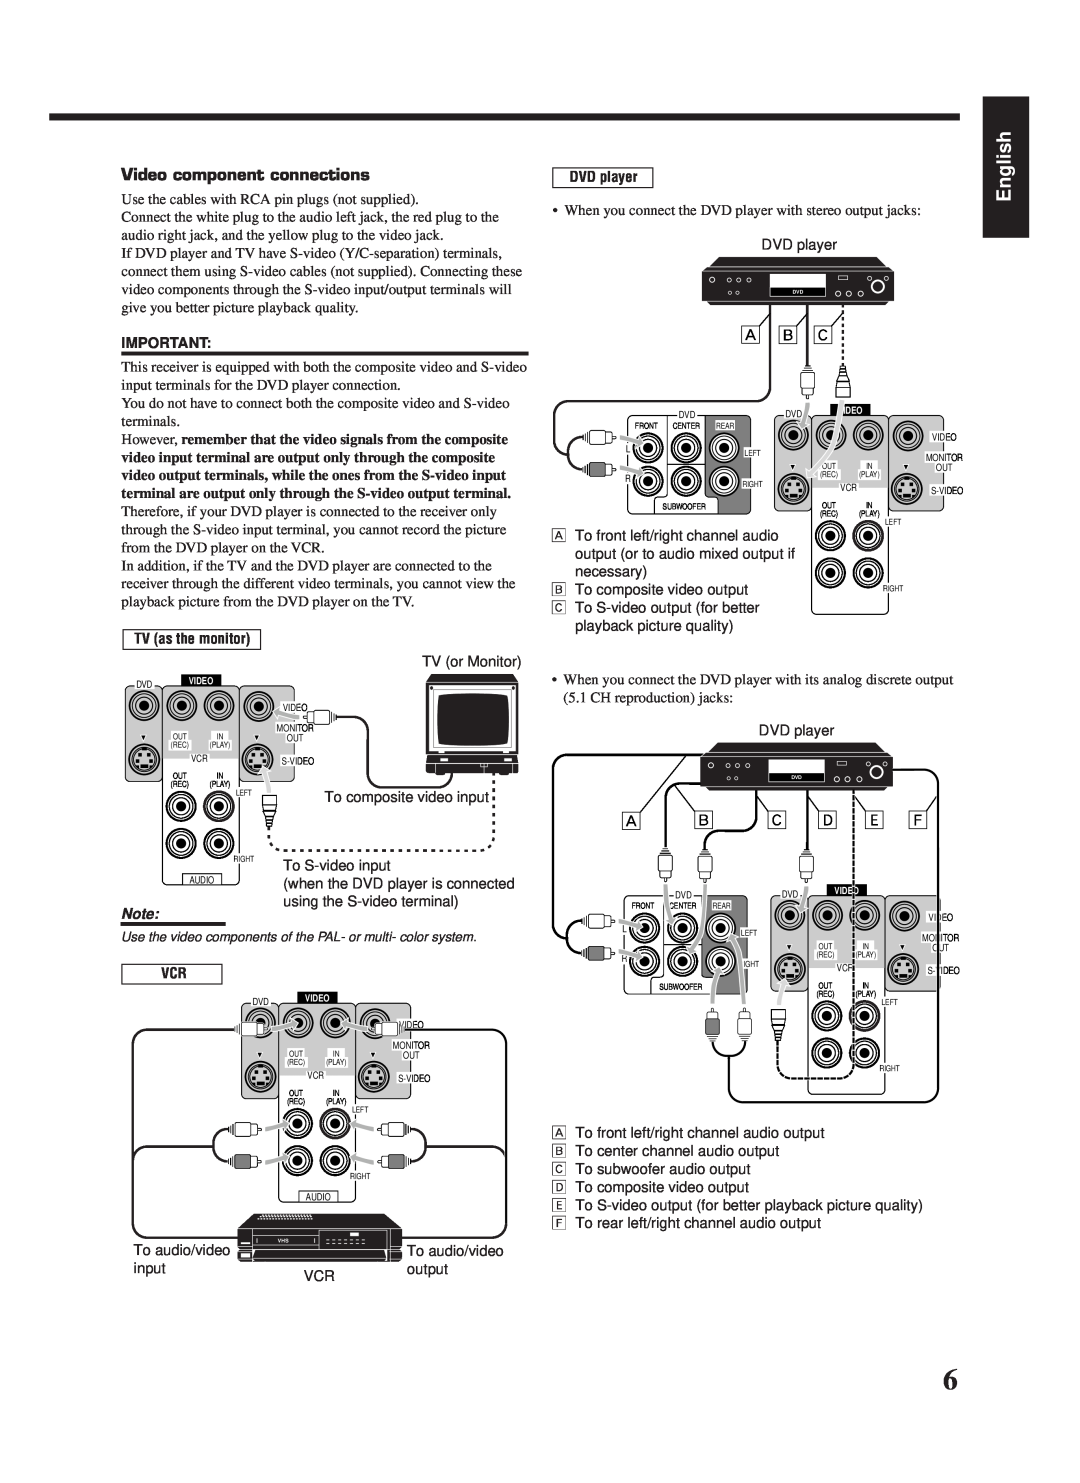 JVC LVT0142-006A, RX-669PGD manual  ı ‚, English, ı ‚ º ä ì, Video component connections, DVD player, TV as the monitor 